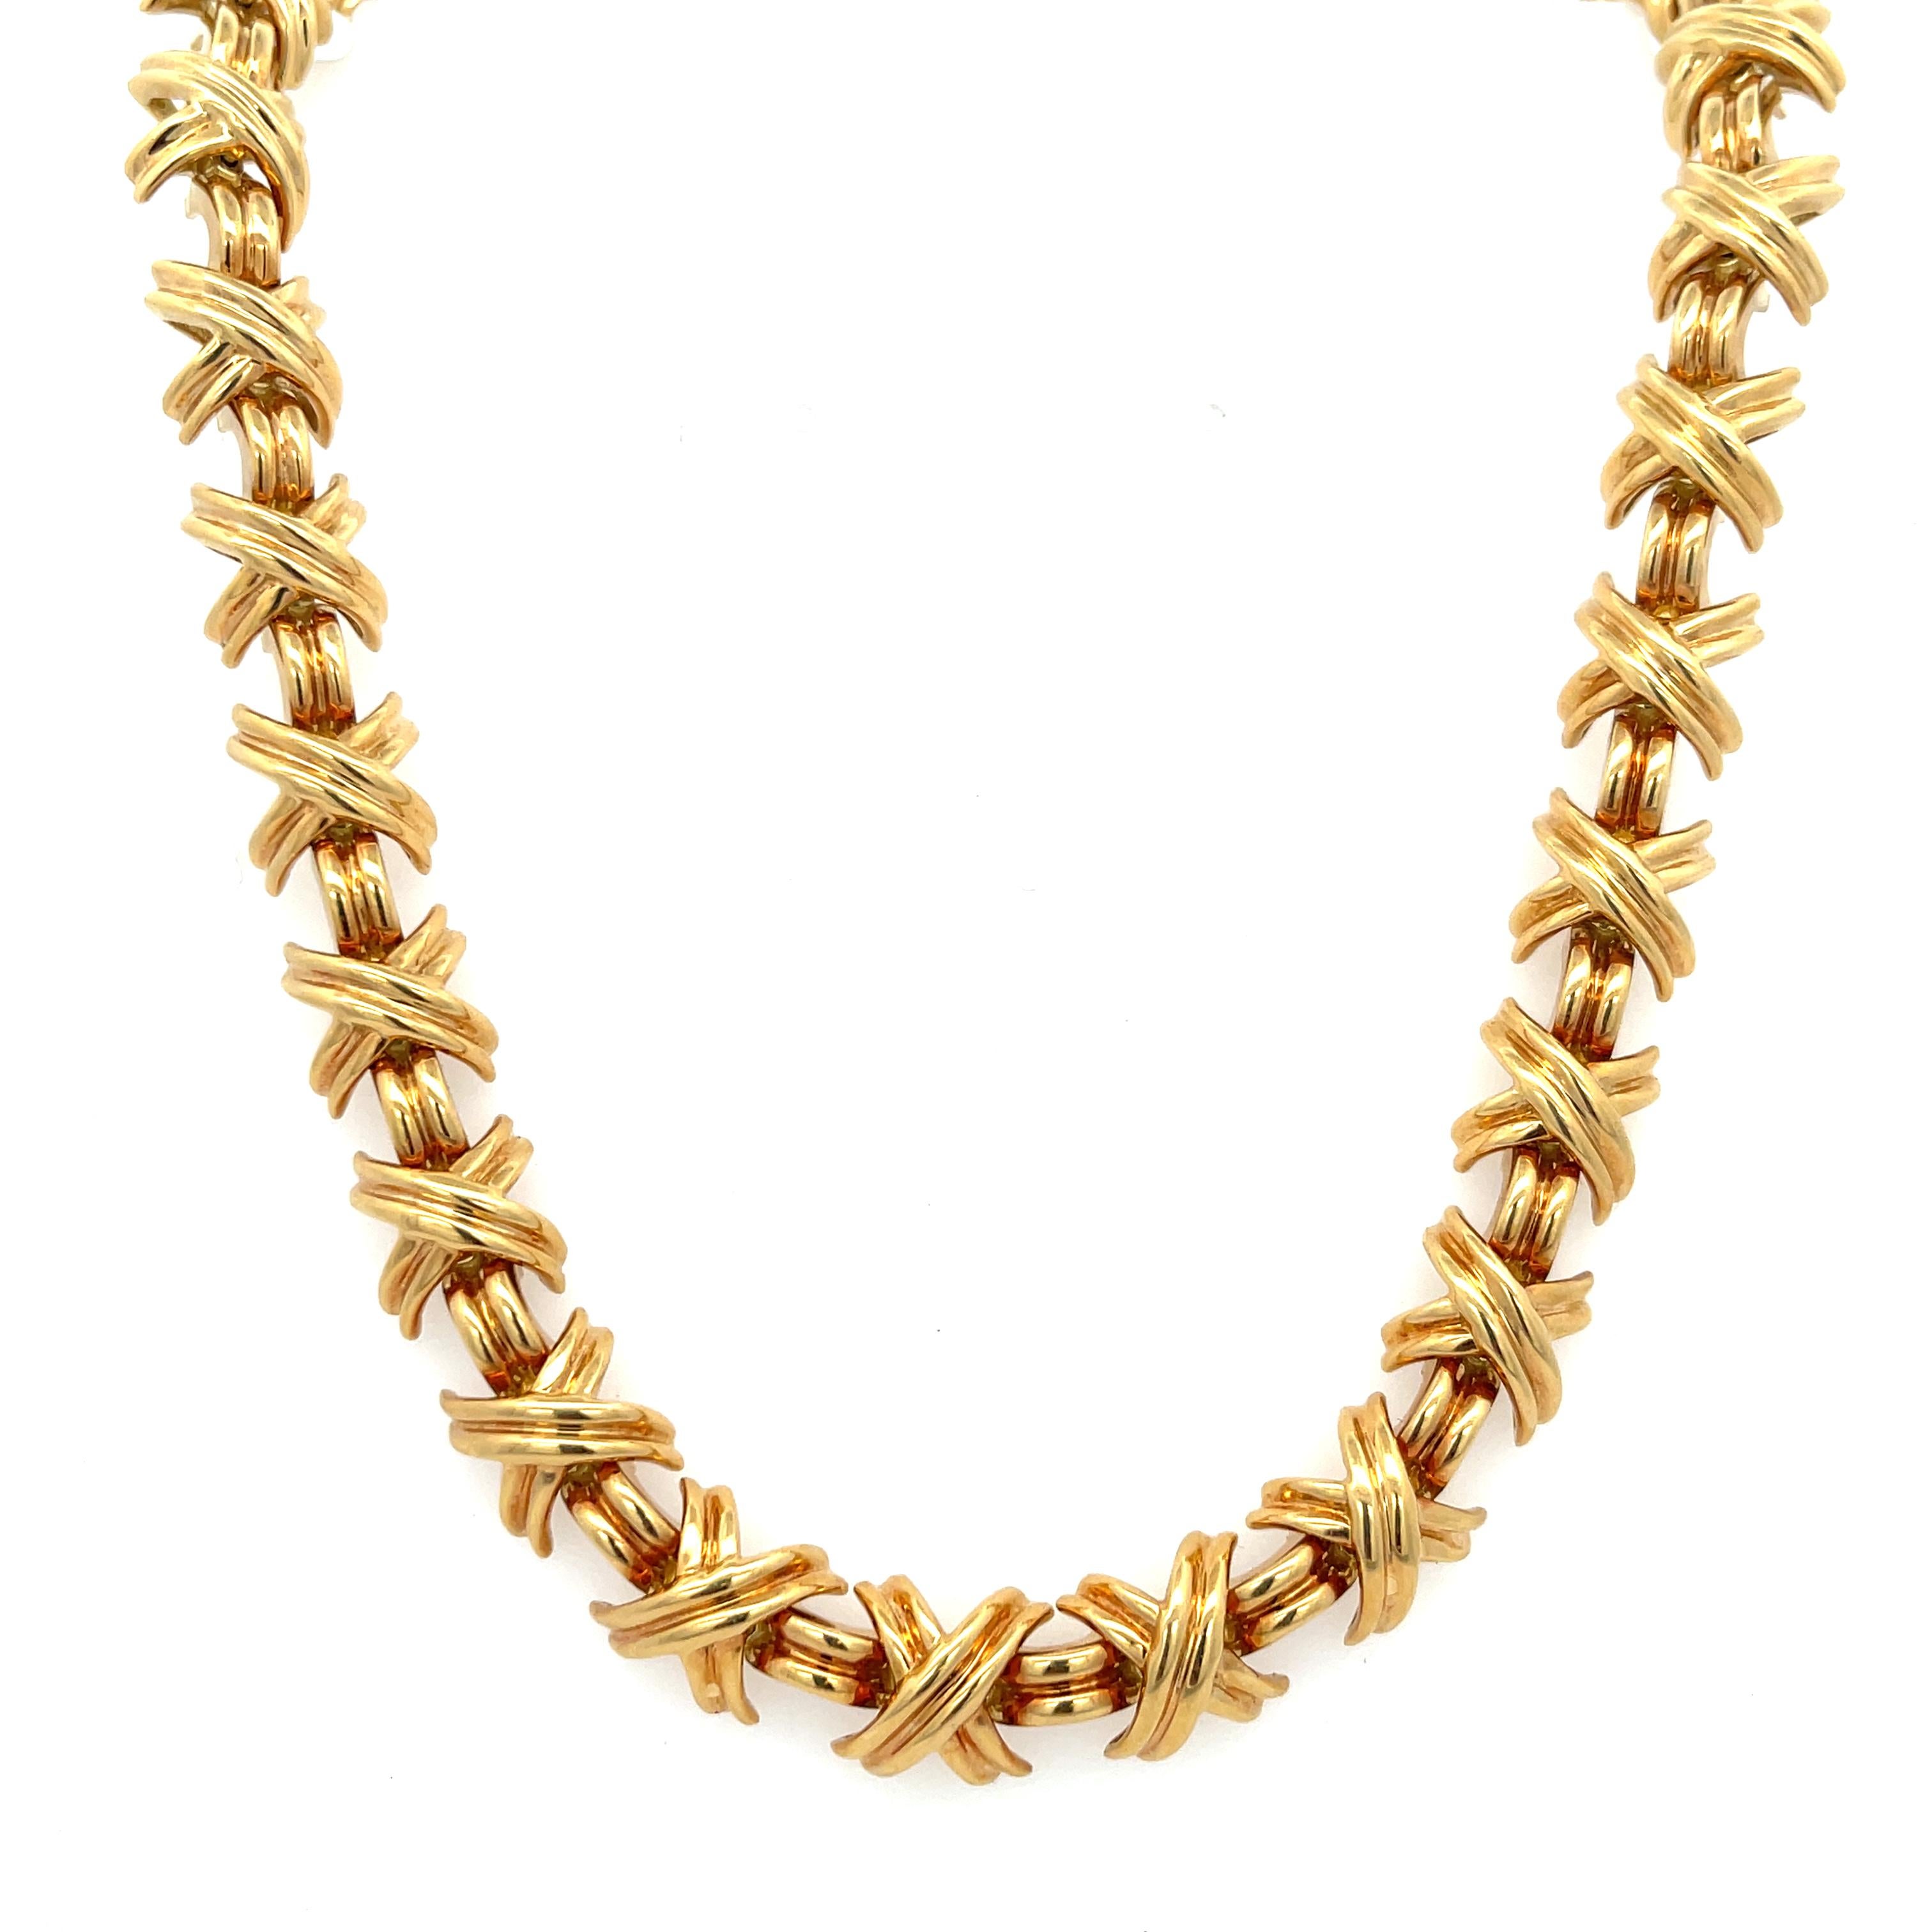 La succession de Tiffany & Co. Collier de la collection Signature Large X en or jaune 18 carats. Le collier mesure 16,5 pouces de long, 3/8 pouces de large et pèse 86,5 grammes. Il est doté d'un fermoir caché et d'une fermeture de sécurité. Singé